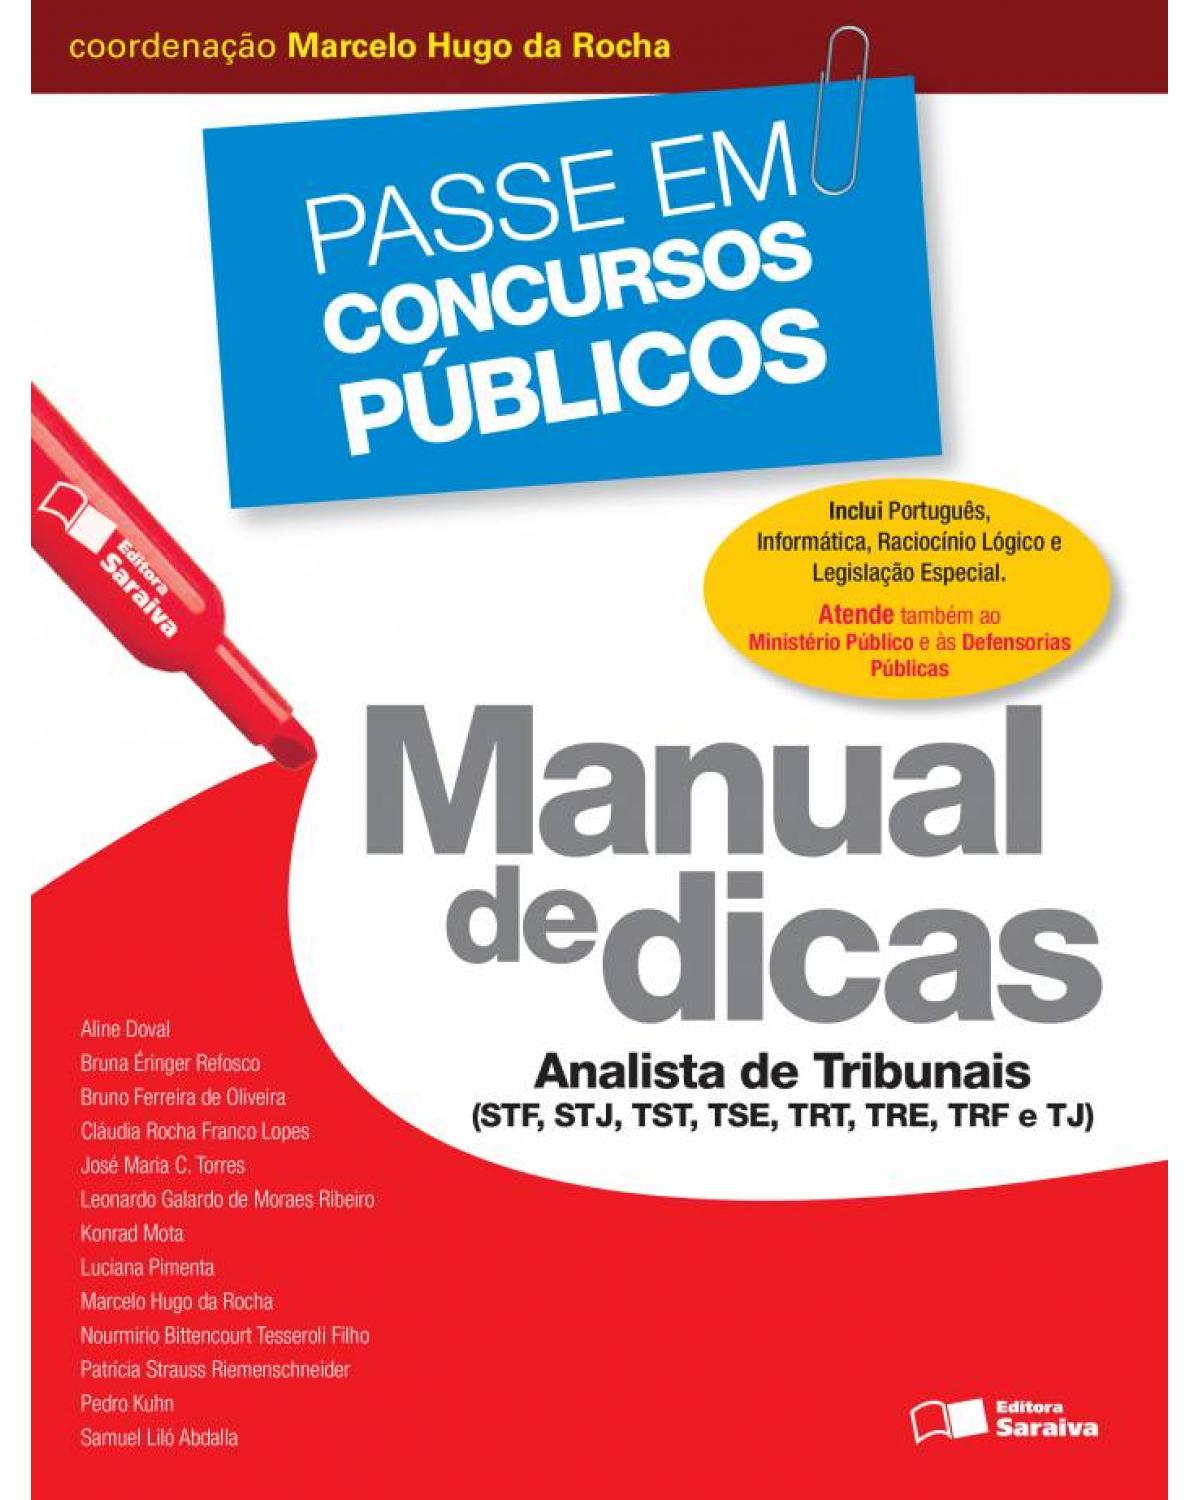 Manual de dicas - Analista de tribunais - STF, STJ, TST, TSE, TRT, TRE, TRF e TJ - 1ª Edição | 2013